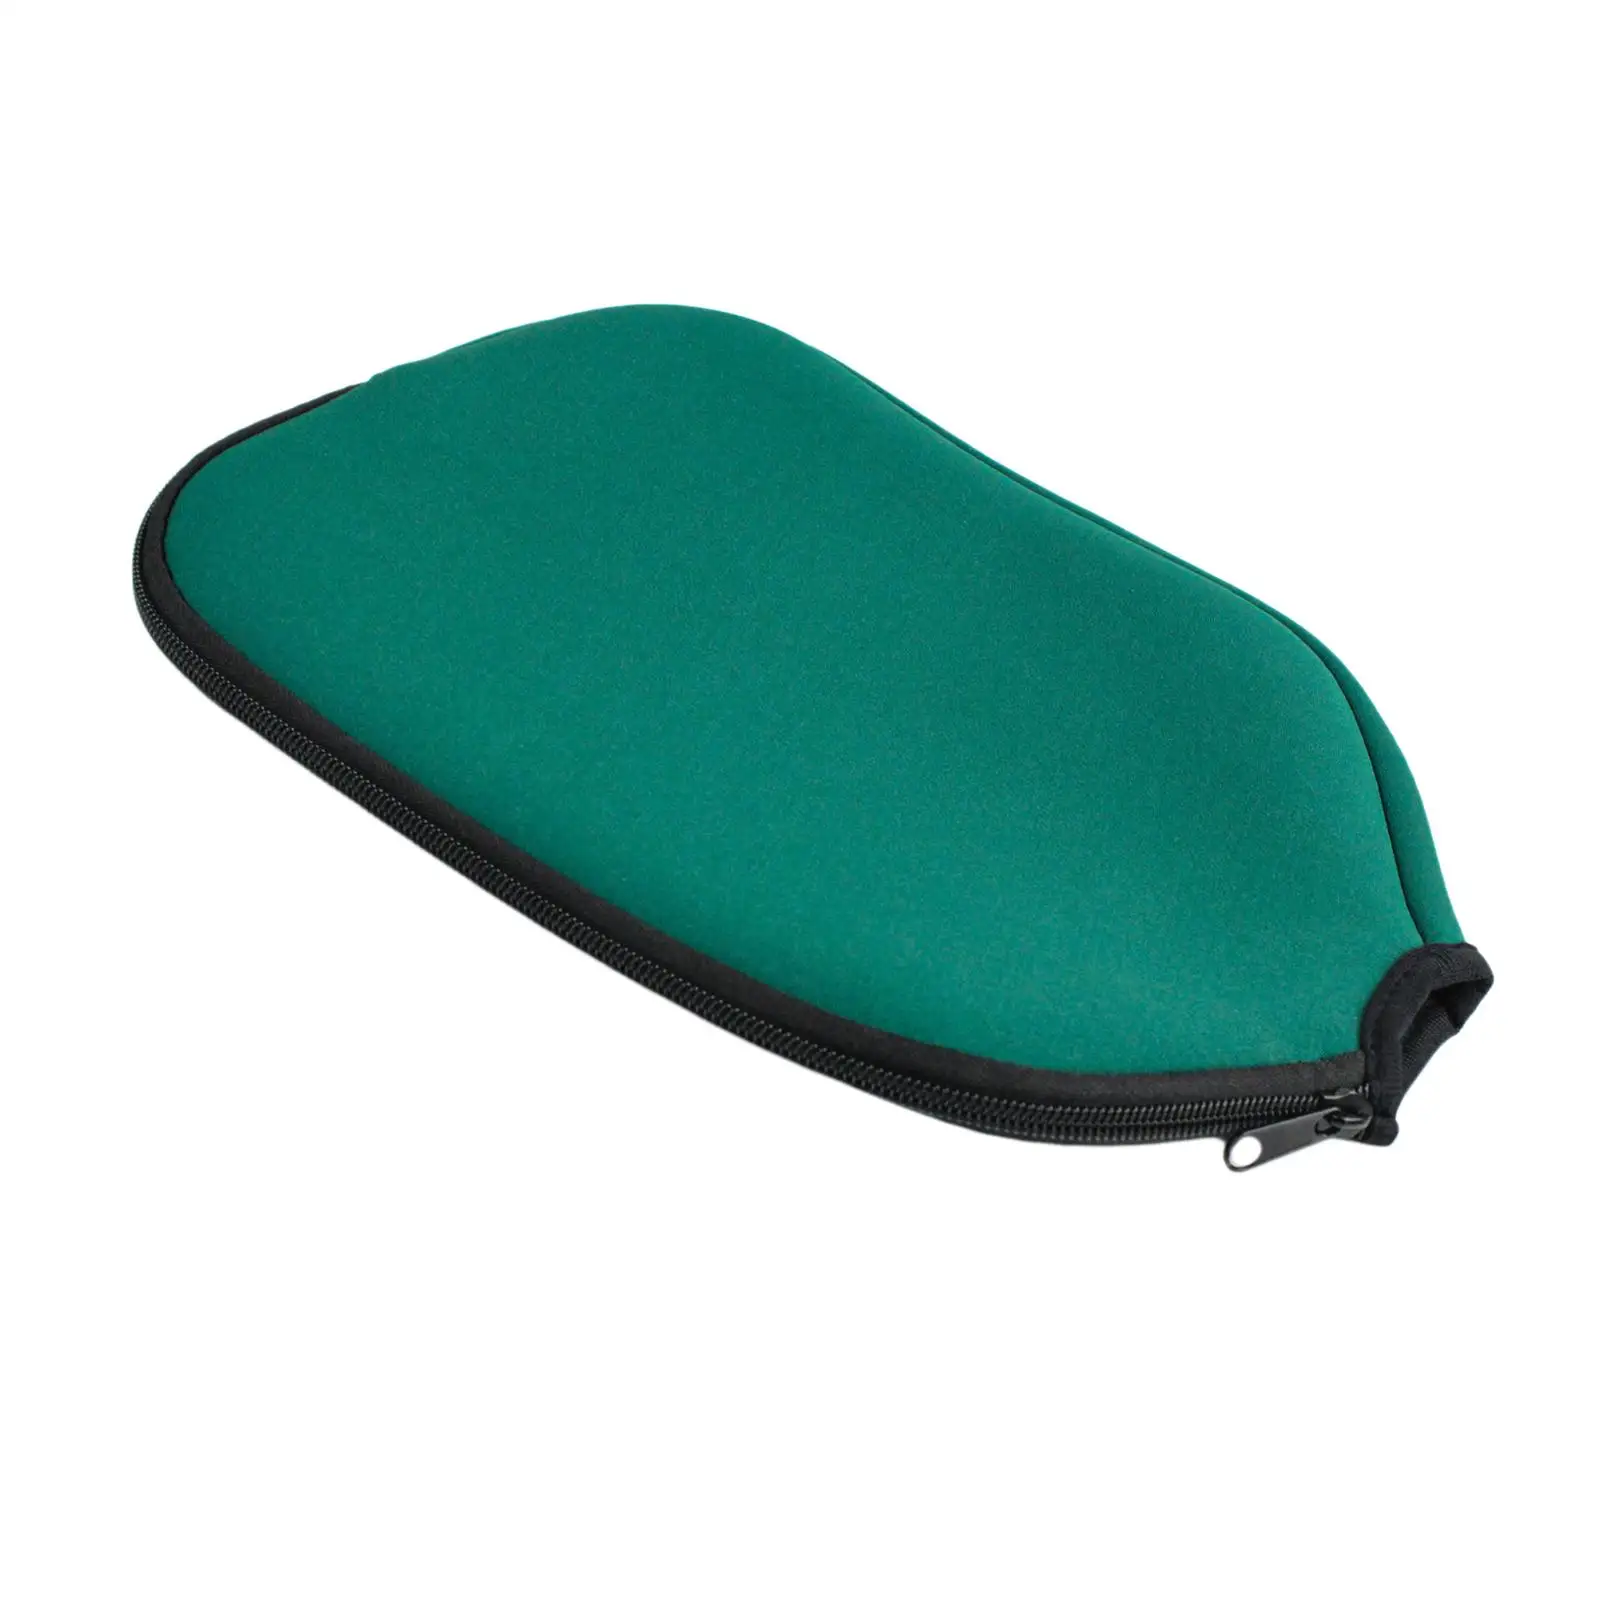 Neoprene Paddle Cover, Racket Sleeve, Pickleball Protection Pickleball Head